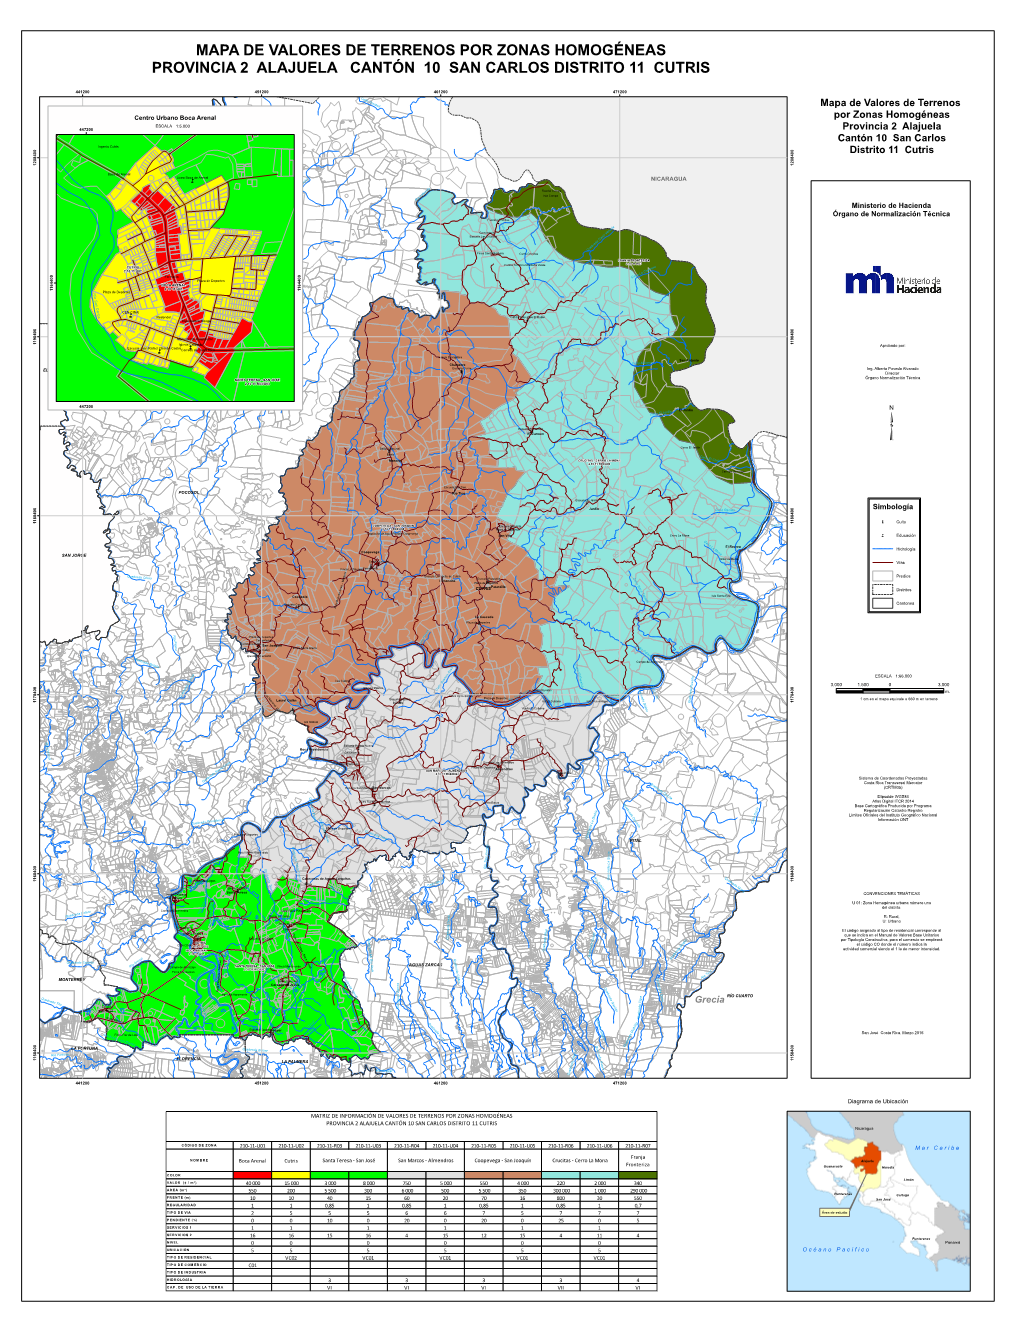 Mapa De Valores De Terrenos Por Zonas Homogéneas Provincia 2 Alajuela Cantón 10 San Carlos Distrito 11 Cutris